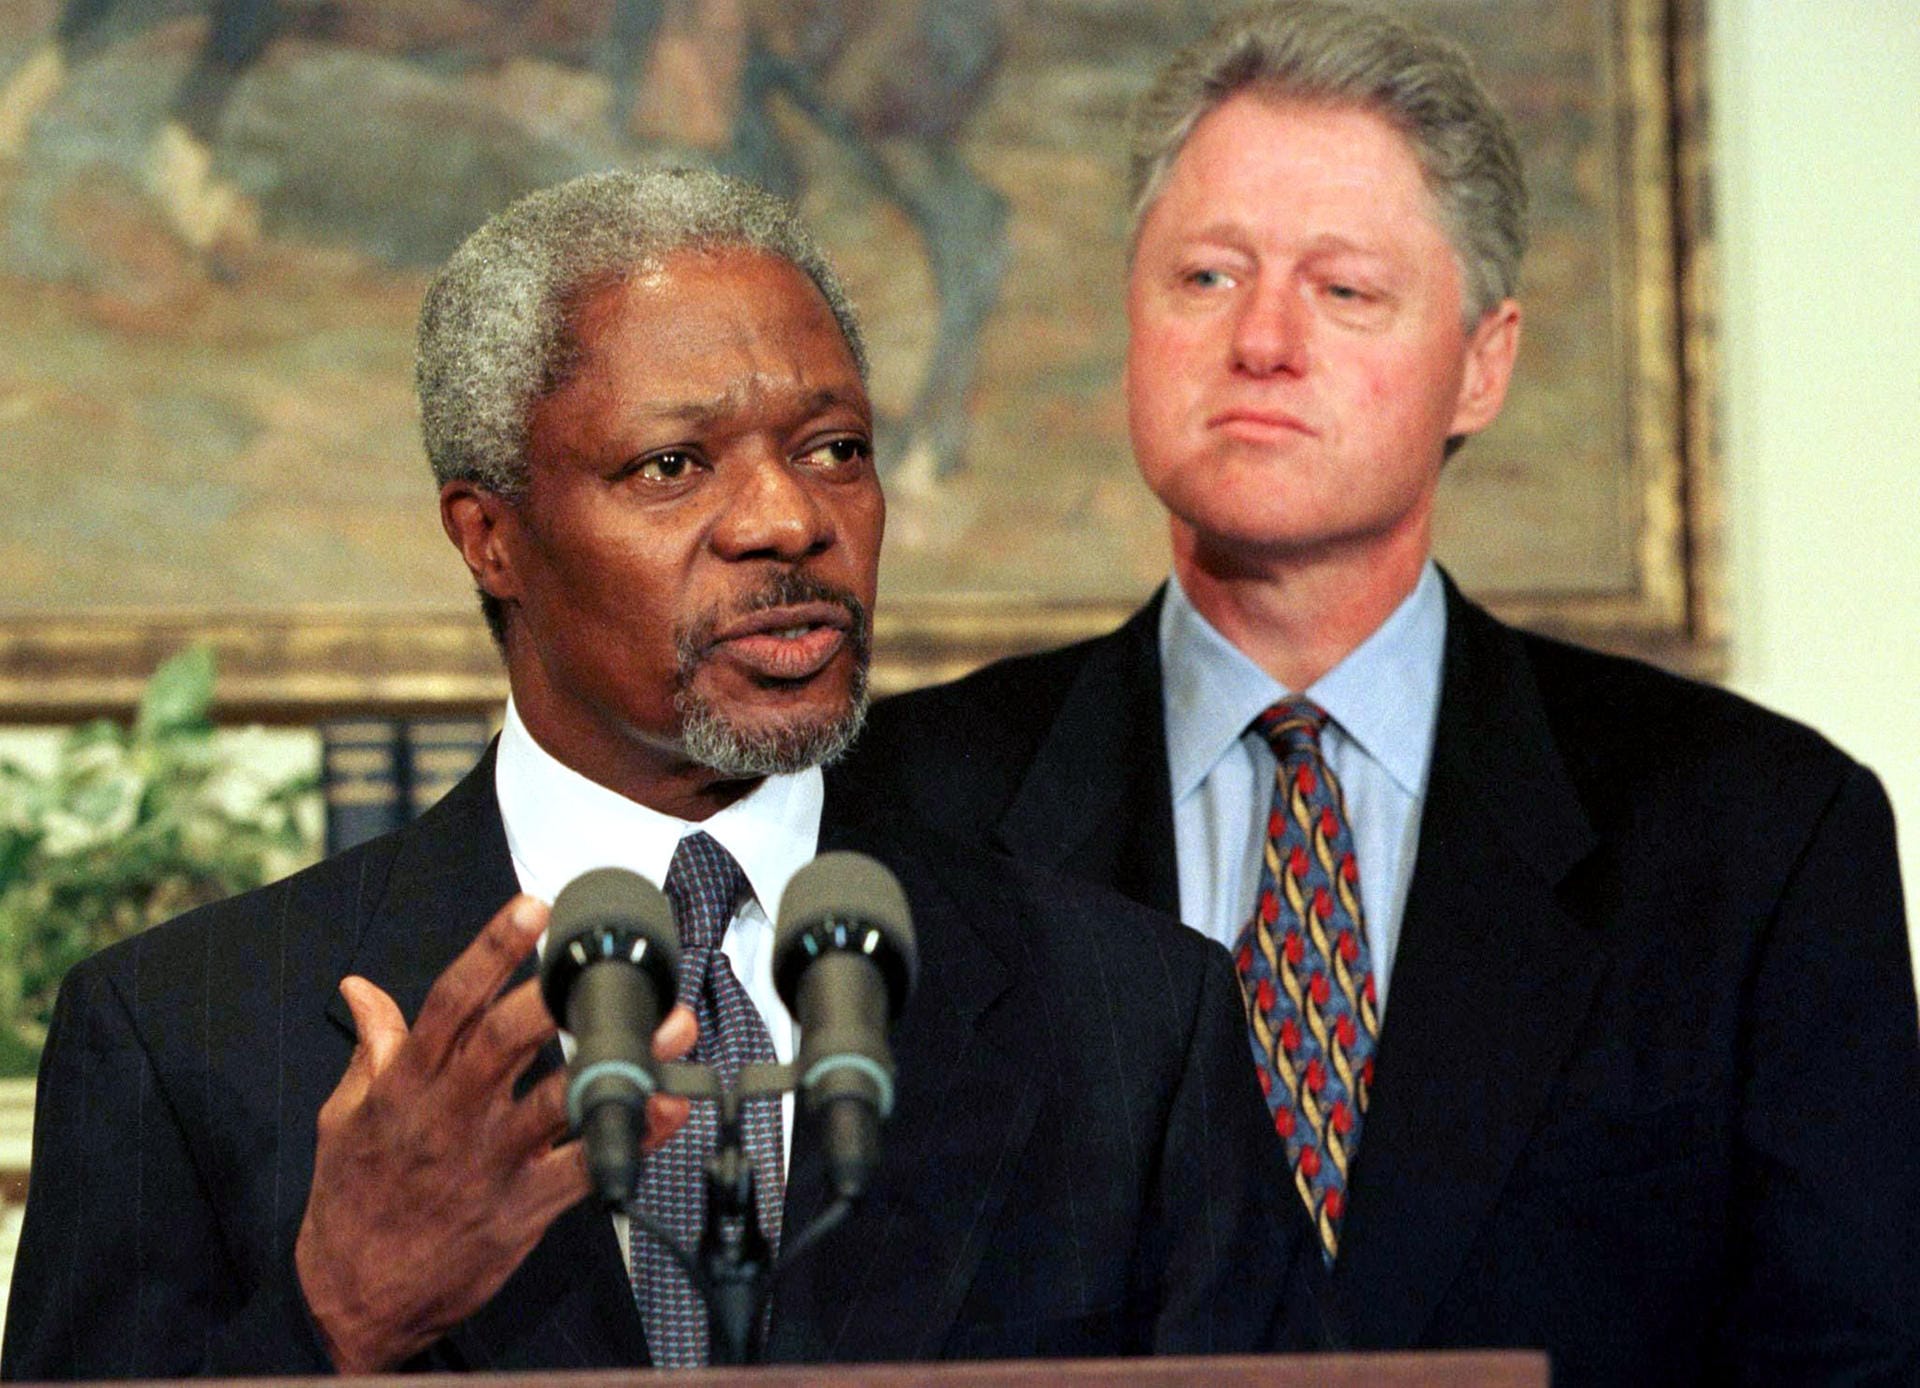 Am 17. Dezember 1996 wurde der Ghanaer Kofi Annan auf Vorschlag der USA zum siebten Generalsekretär der Vereinten Nationen gewählt. Sein Amt trat er ab dem 1. Januar 1997 an. Im Bild hält er eine Rede am 23. Januar im Weißen Haus, nachdem er den damaligen US-Präsidenten Bill Clinton getroffen hat.